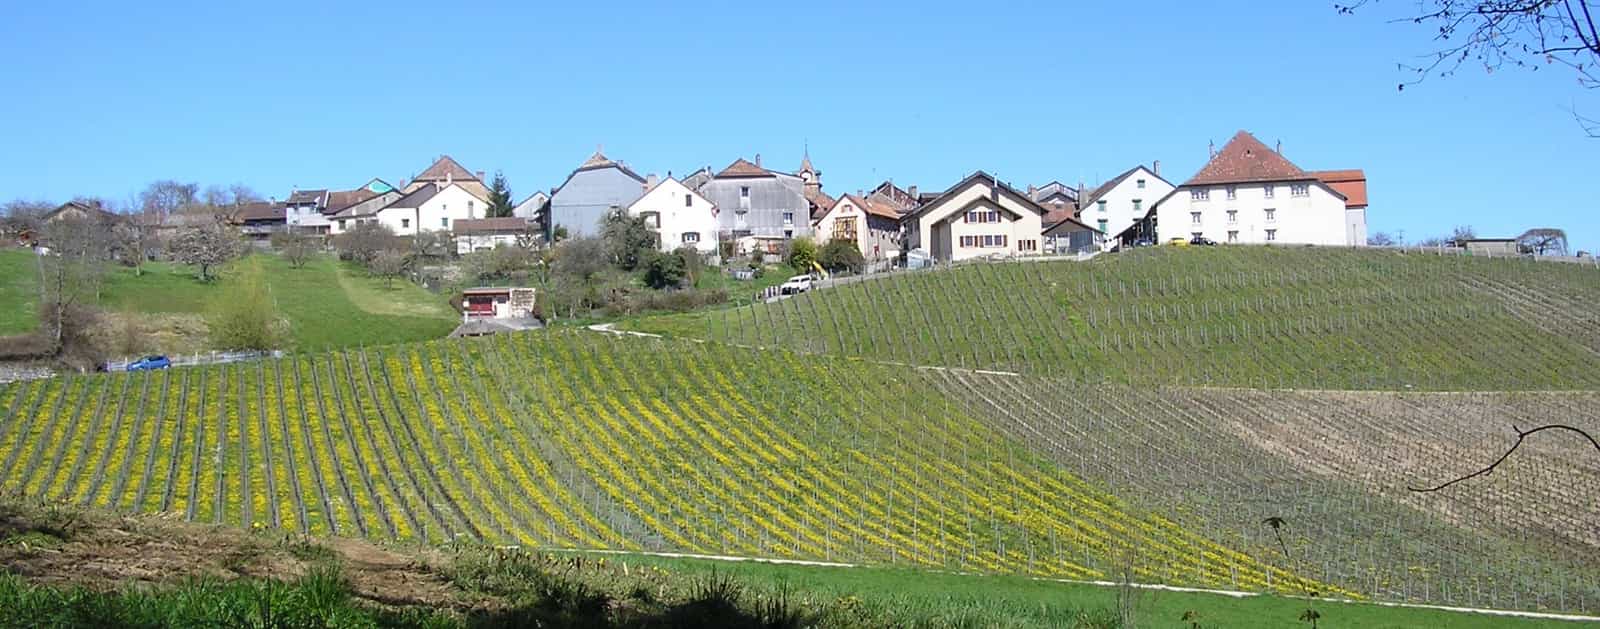 Vue de Saint-Livres (direction vallon de l'Aubonne), canton de Vaud, Suisse.